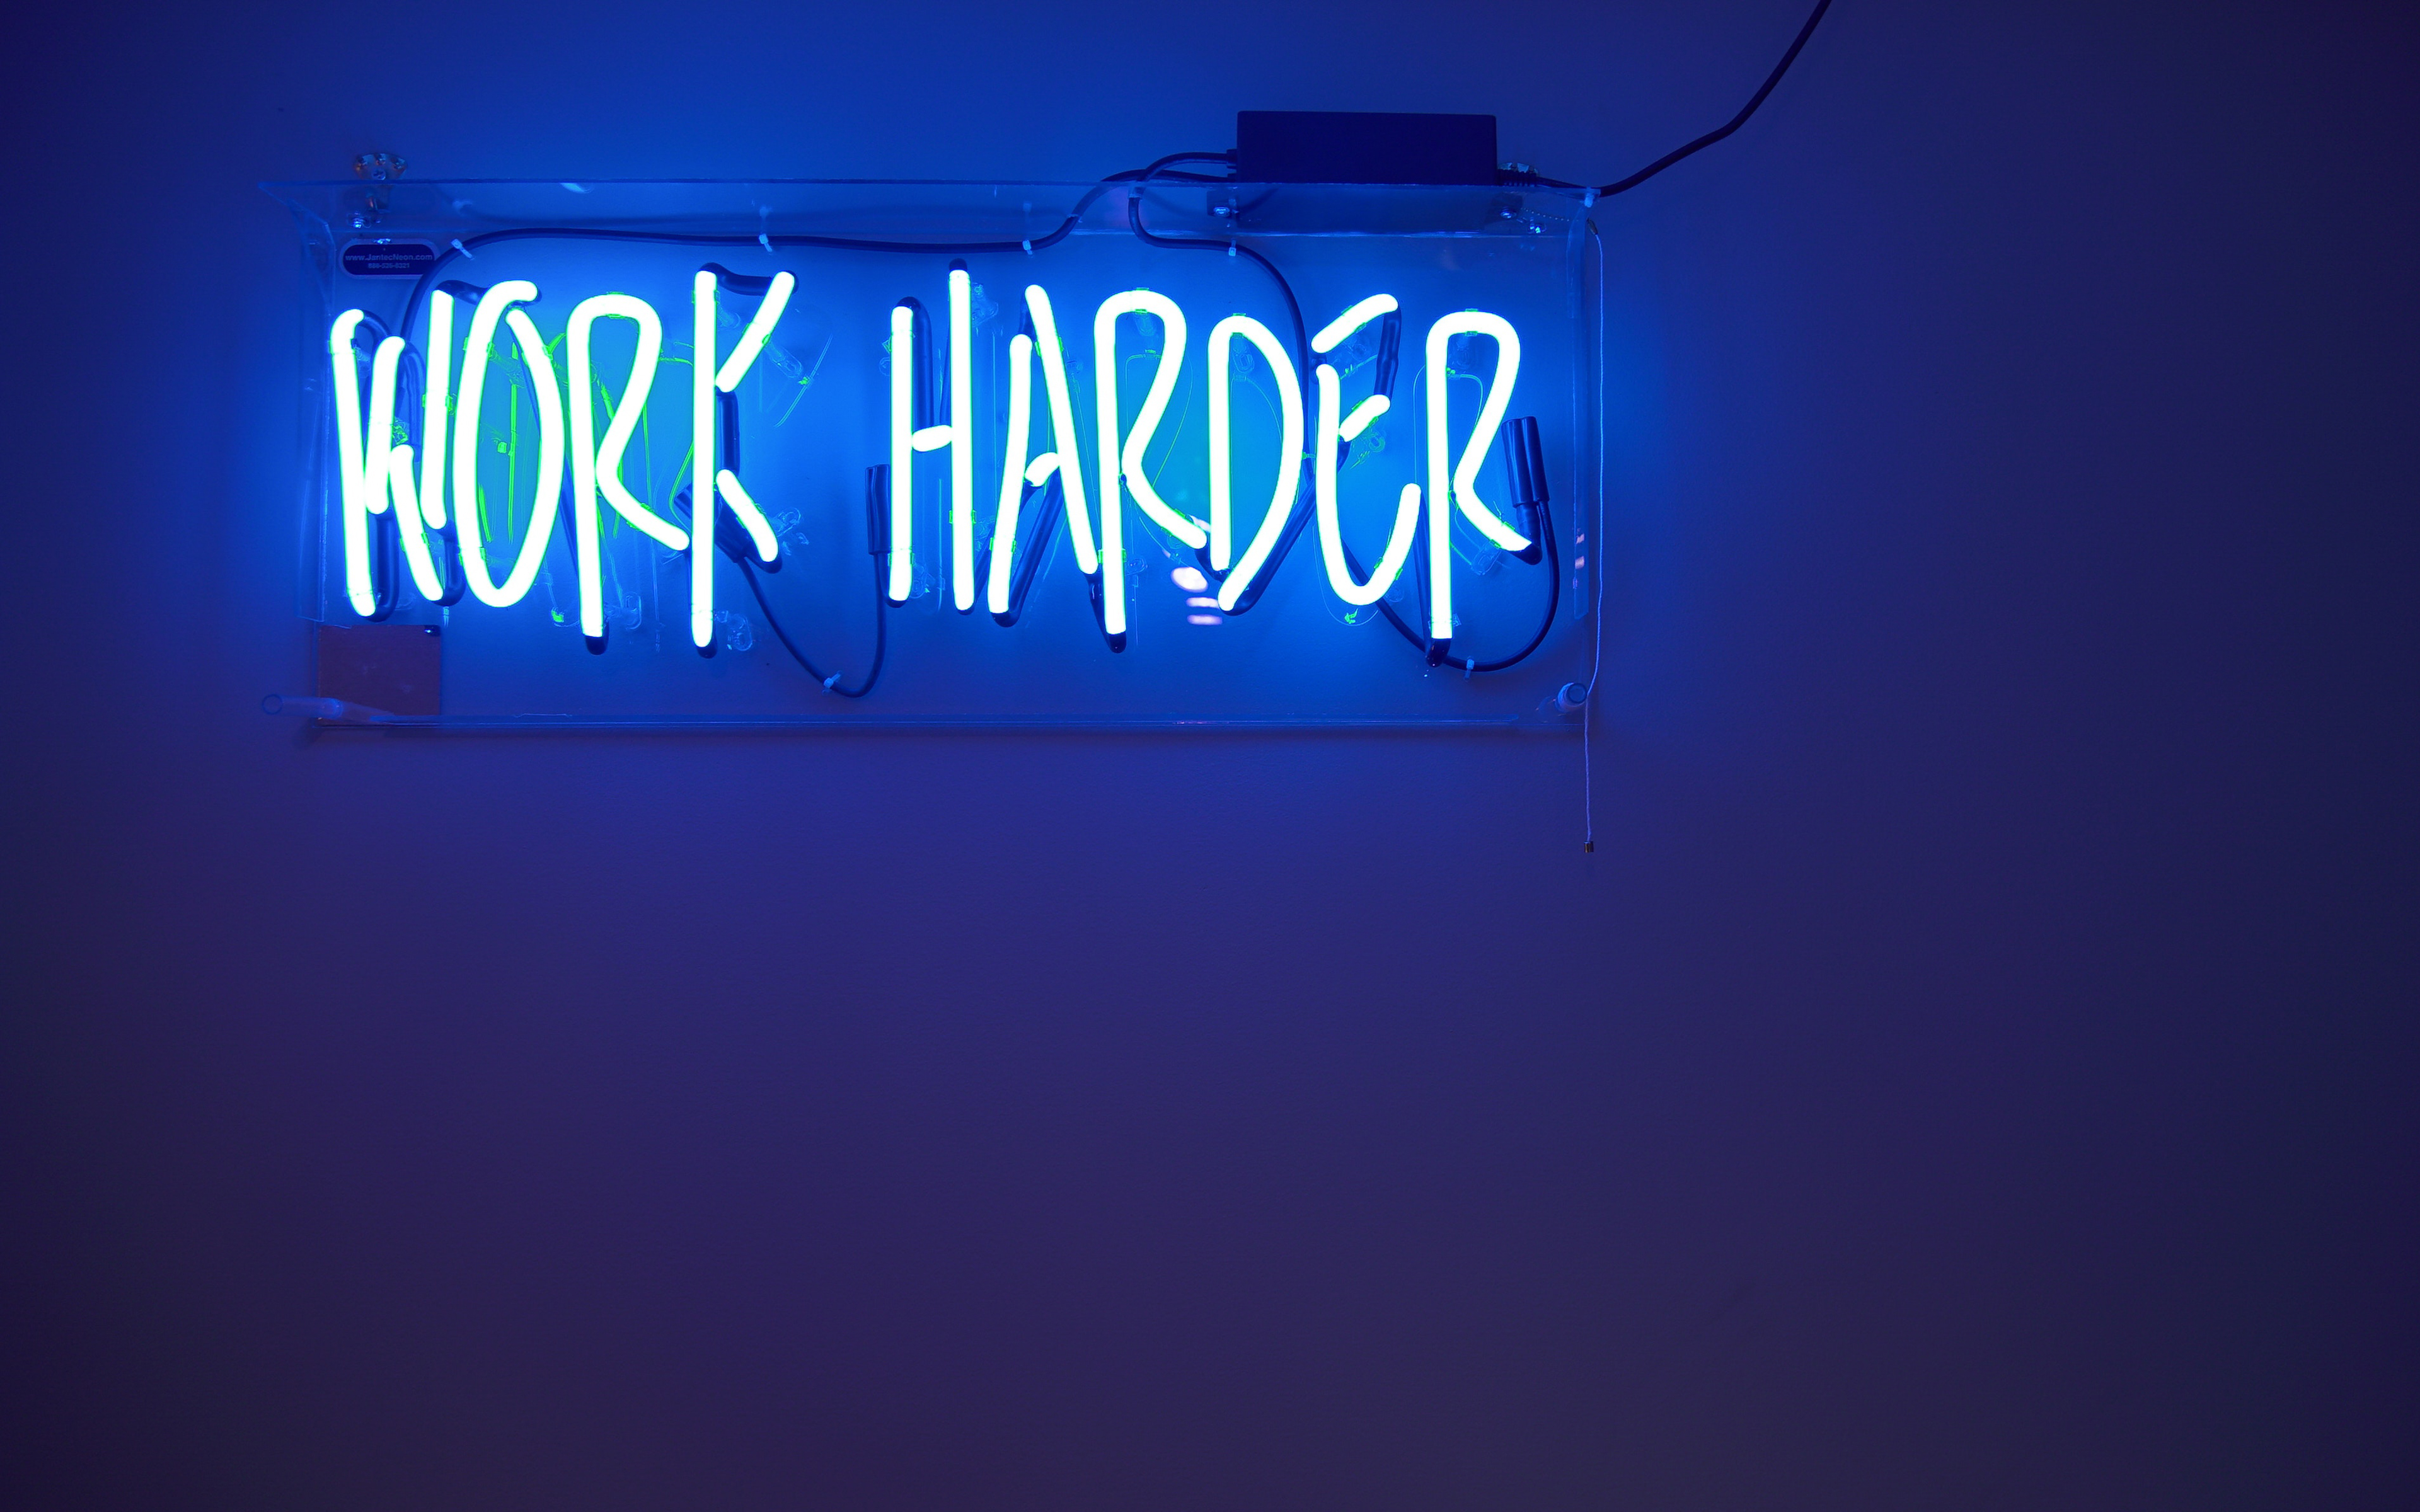 Work Harder Neon Sign 4K